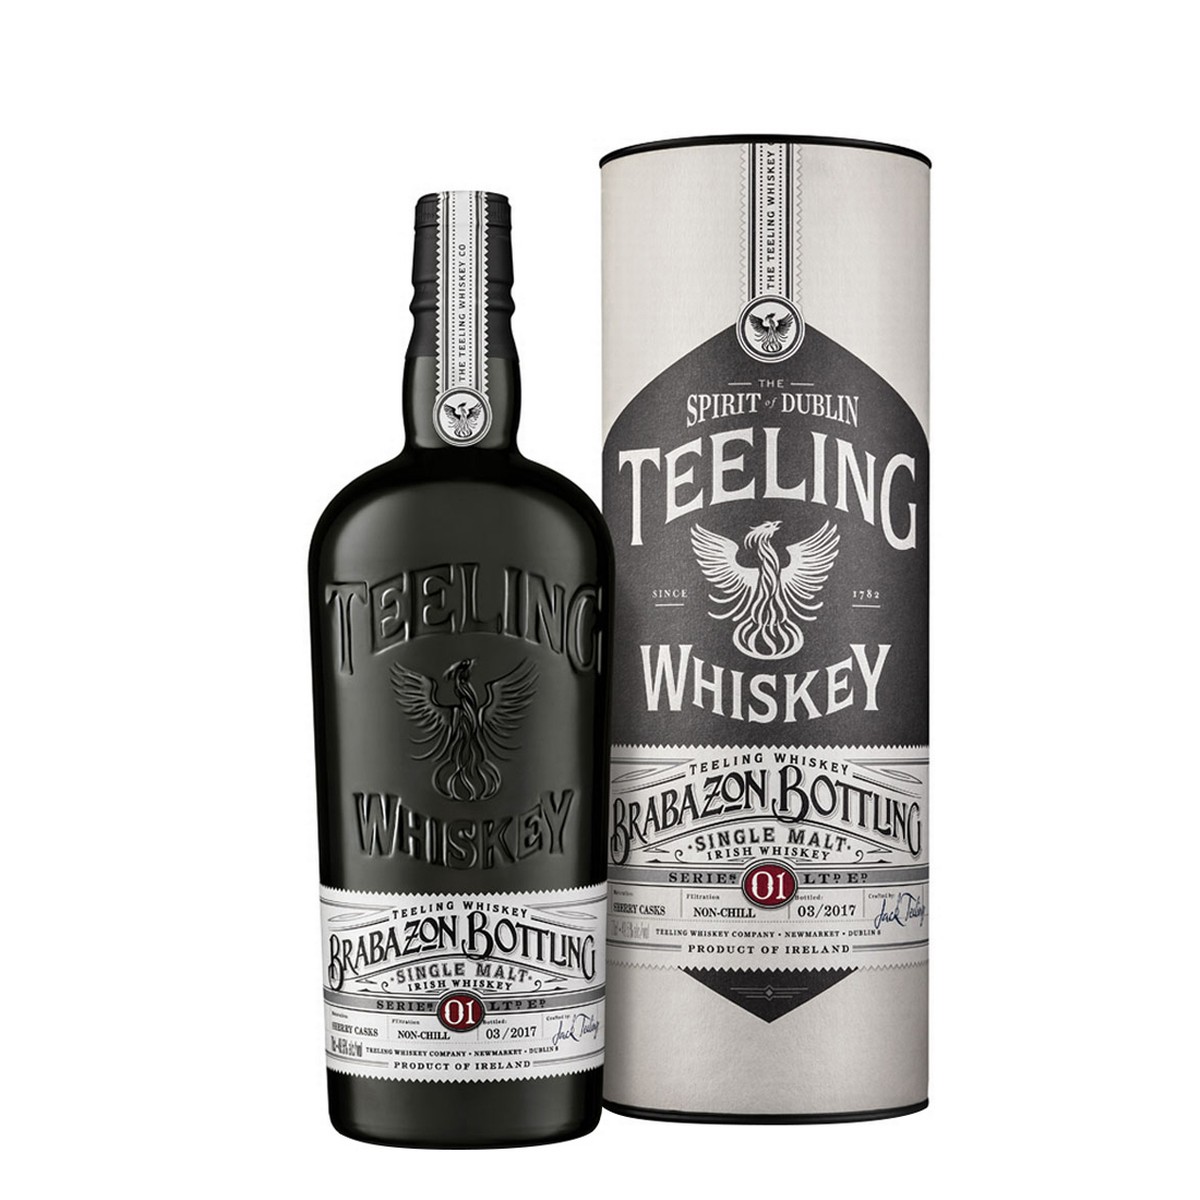 Teeling Brabazon Bottling Series No.1